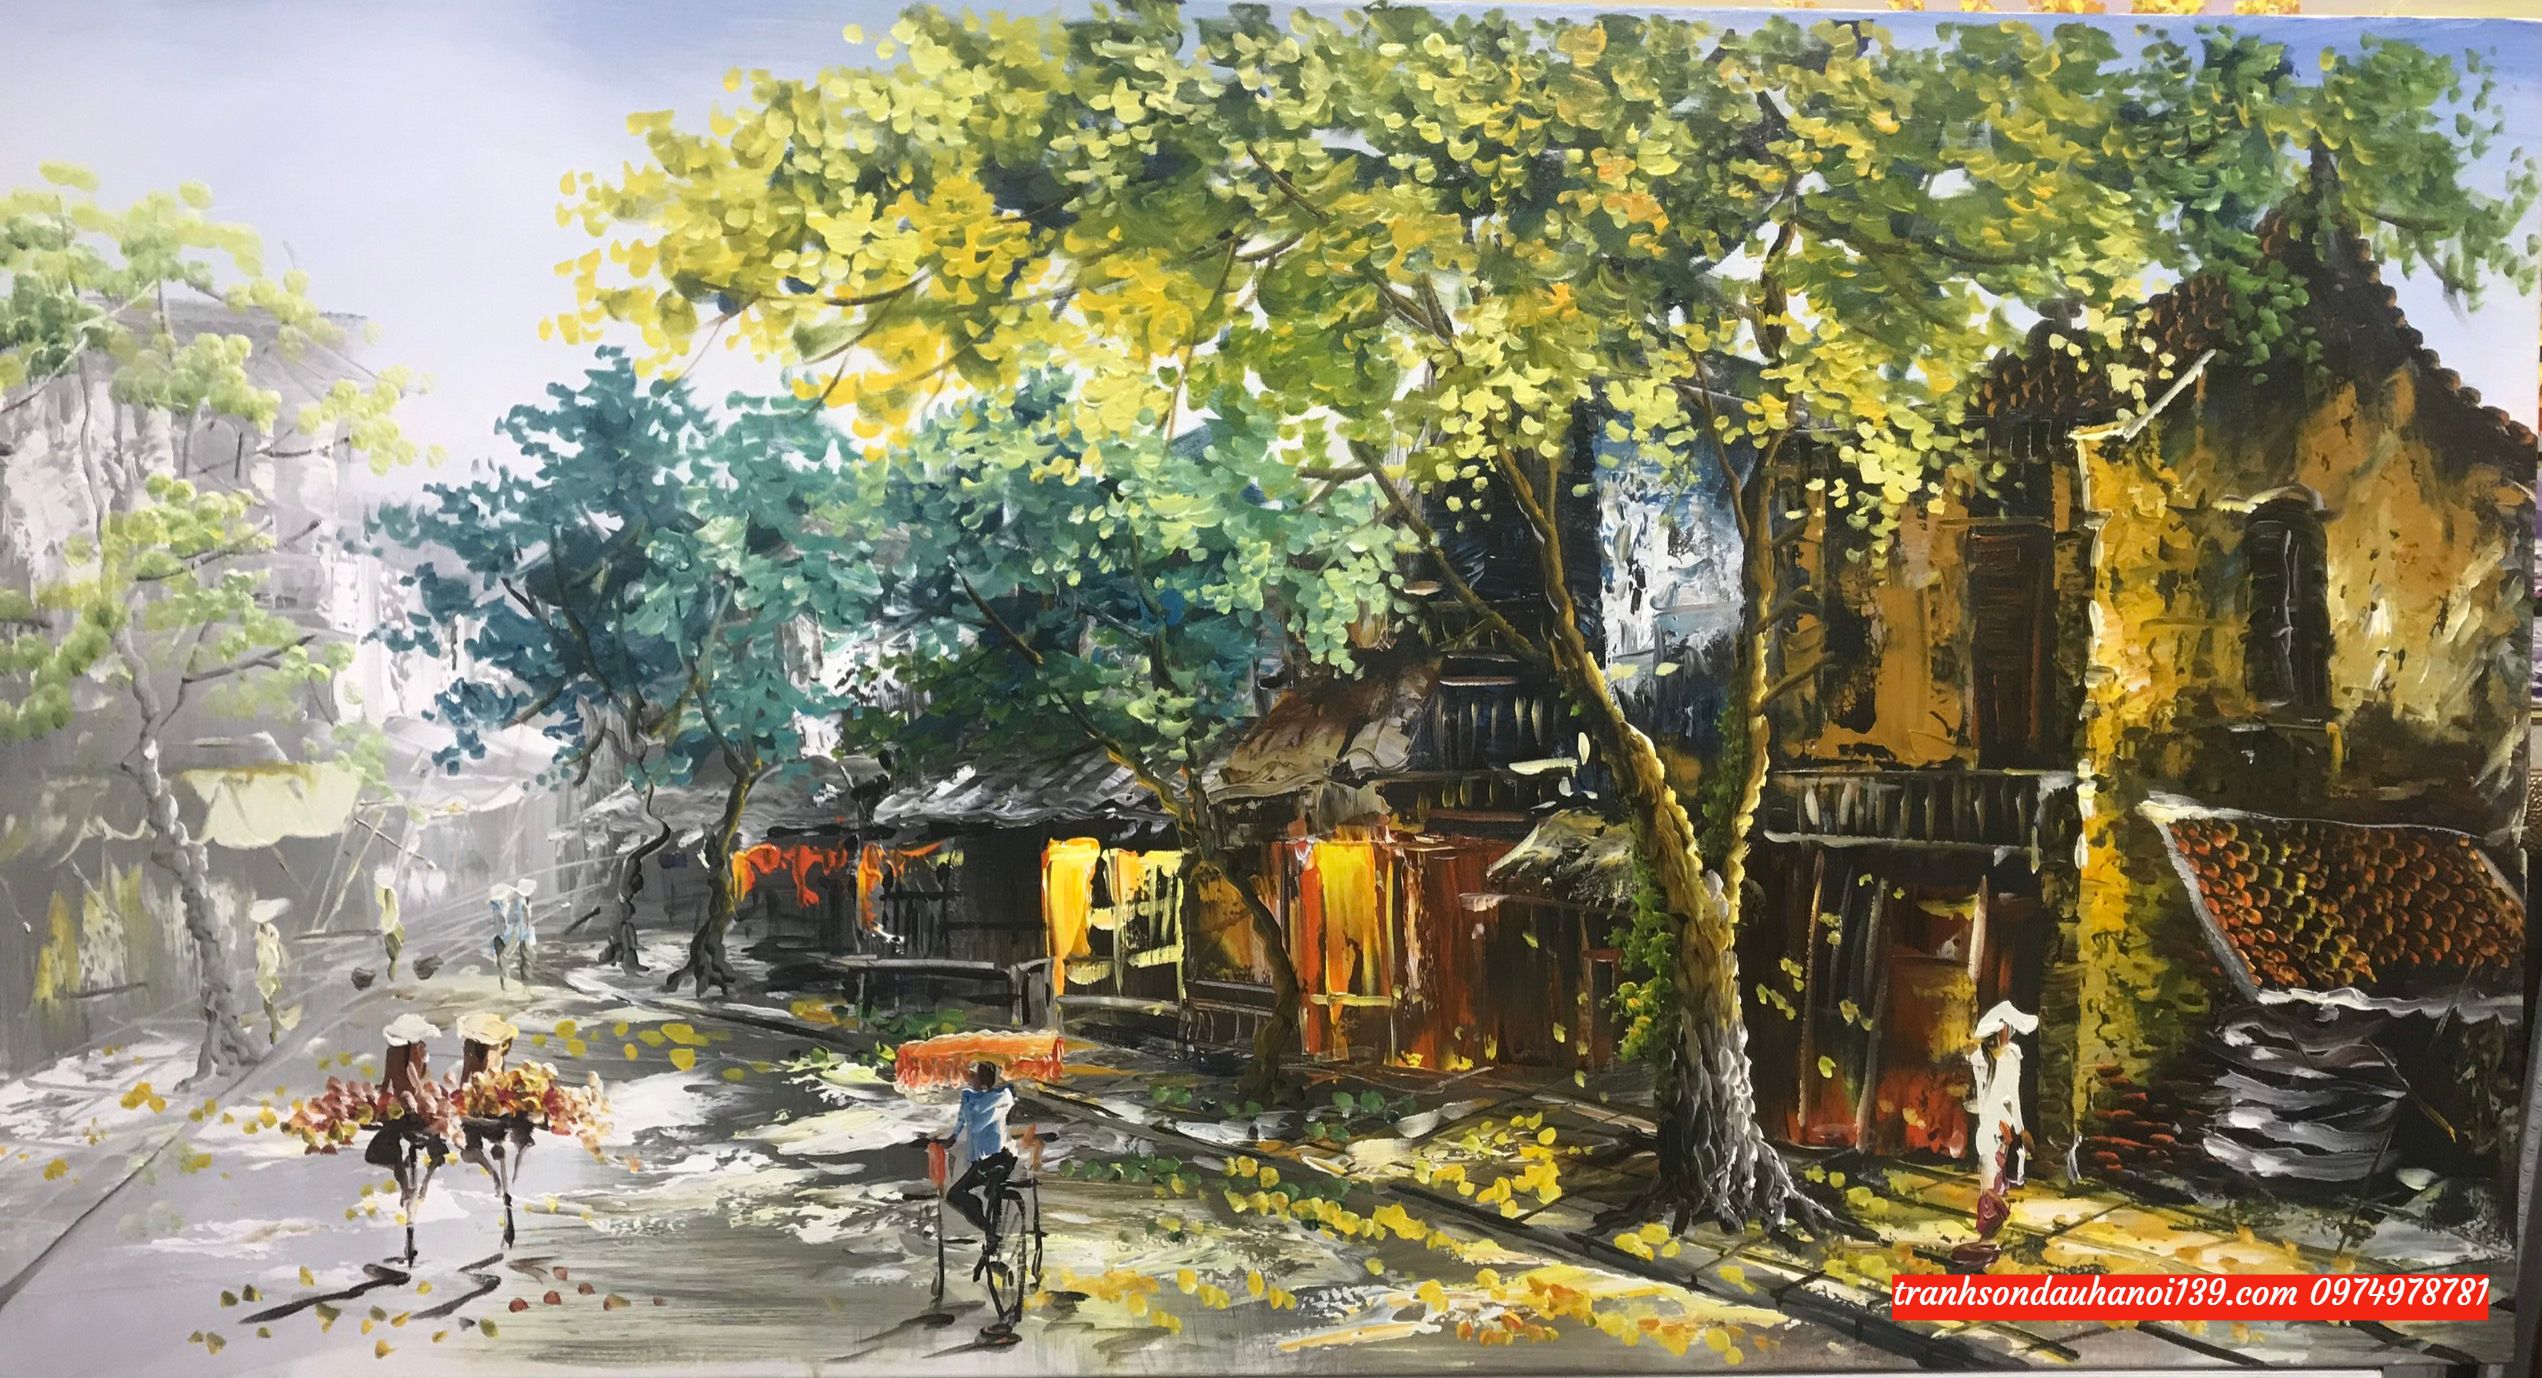 Tranh phố cổ hà nội tranh vẽ sơn dầu SD0049  Tranh Sơn Dầu Đẹp Việt   Xưởng tranh sơn dầu